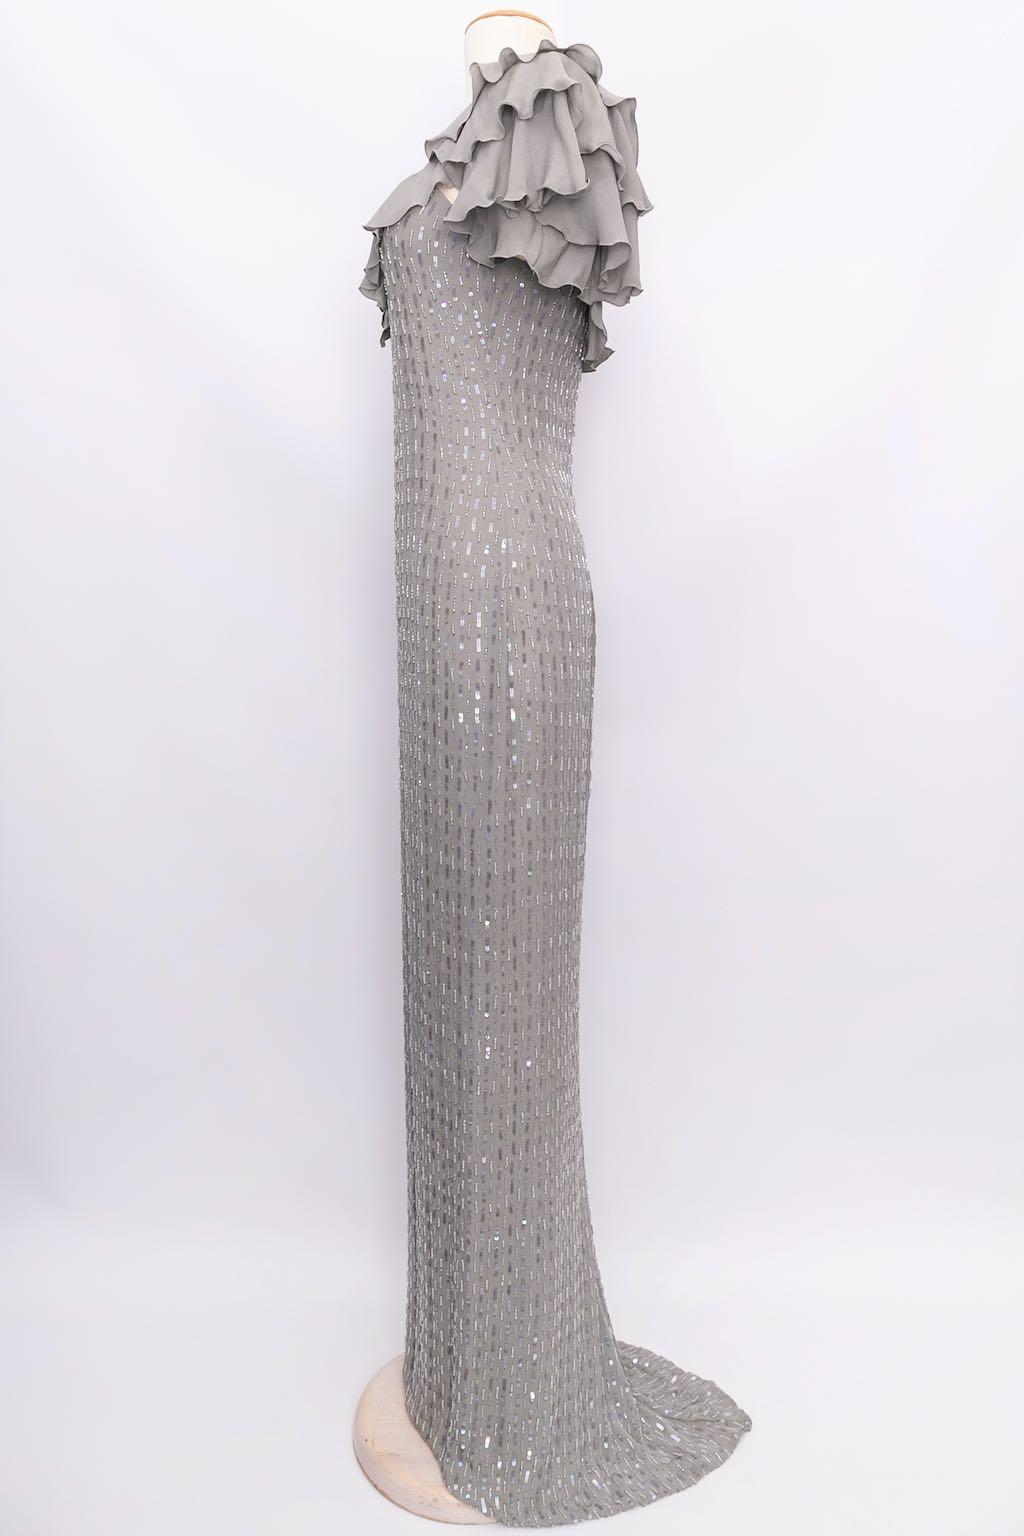 Azzaro (Made in France) Robe en soie brodée de perles et de paillettes. Pas de composition ni d'étiquette de taille, convient à une taille 36FR.

Informations complémentaires : 
Dimensions : Poitrine : 36 cm (14.17 in), Taille : 34 cm (13.39 in),